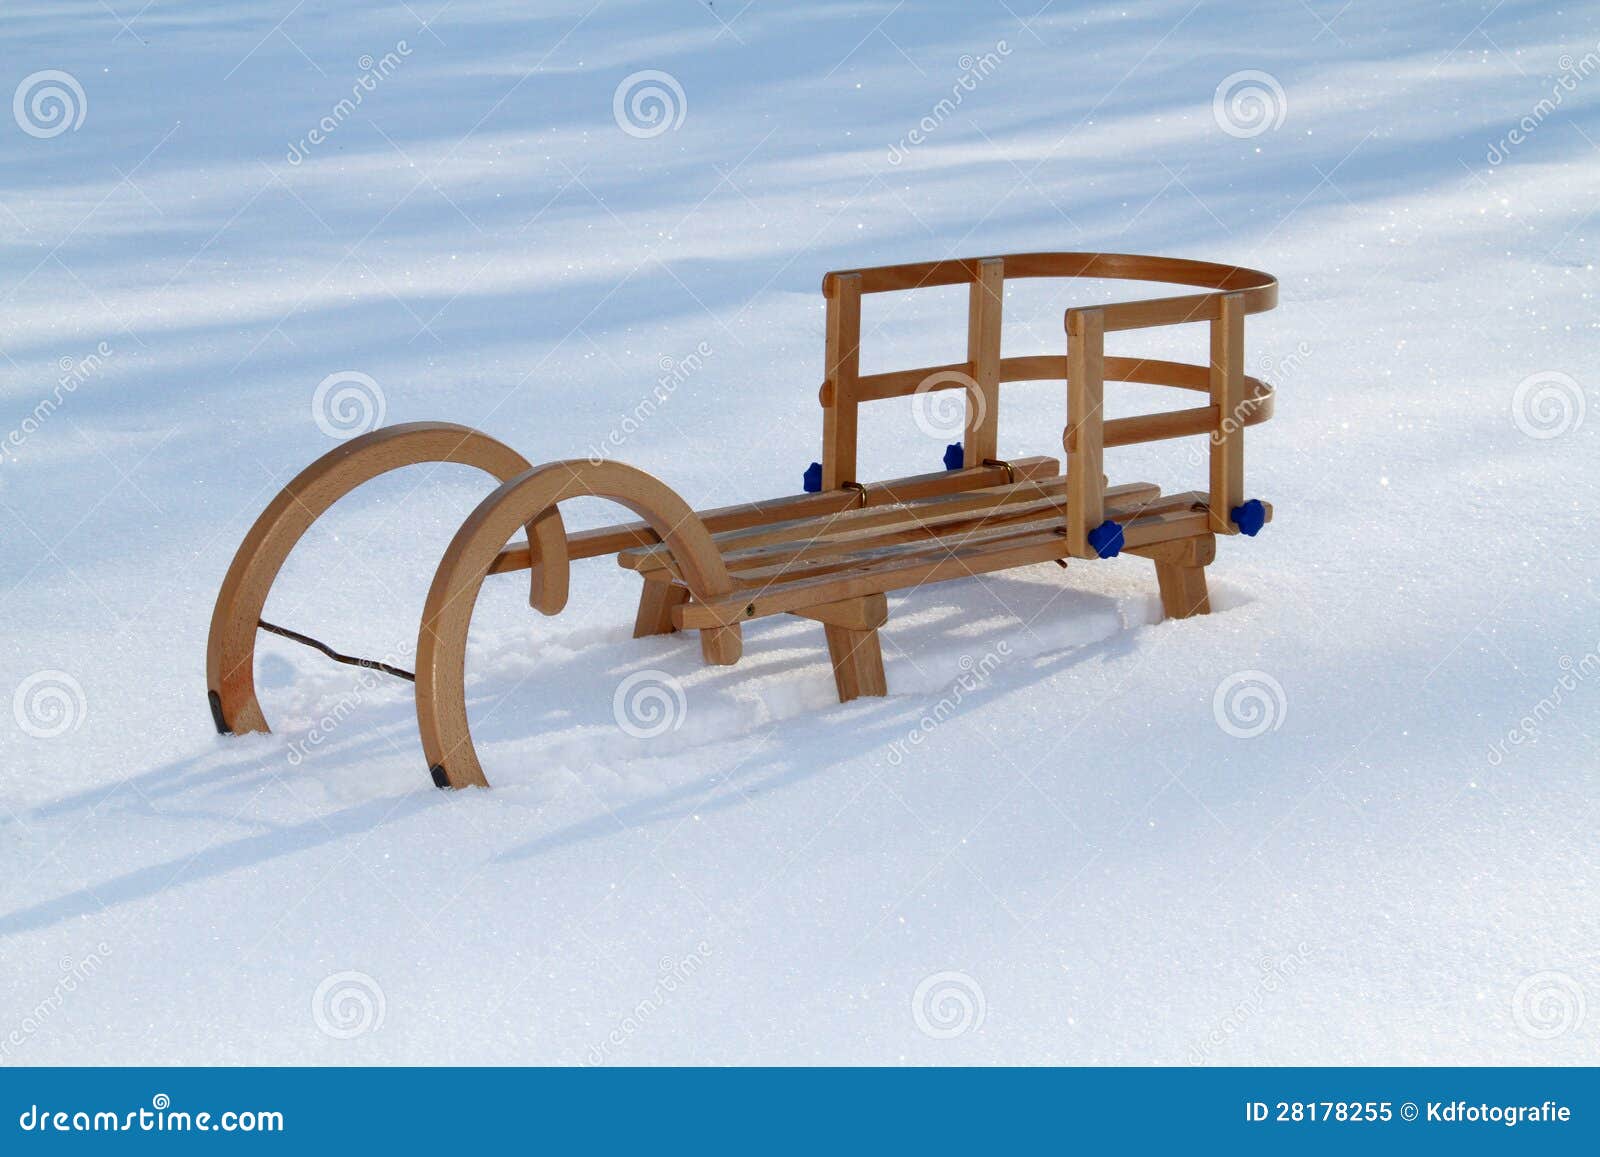 partij gedragen Minder Retro Houten Slee in Sneeuw Stock Afbeelding - Image of gegevens, winters:  28178255